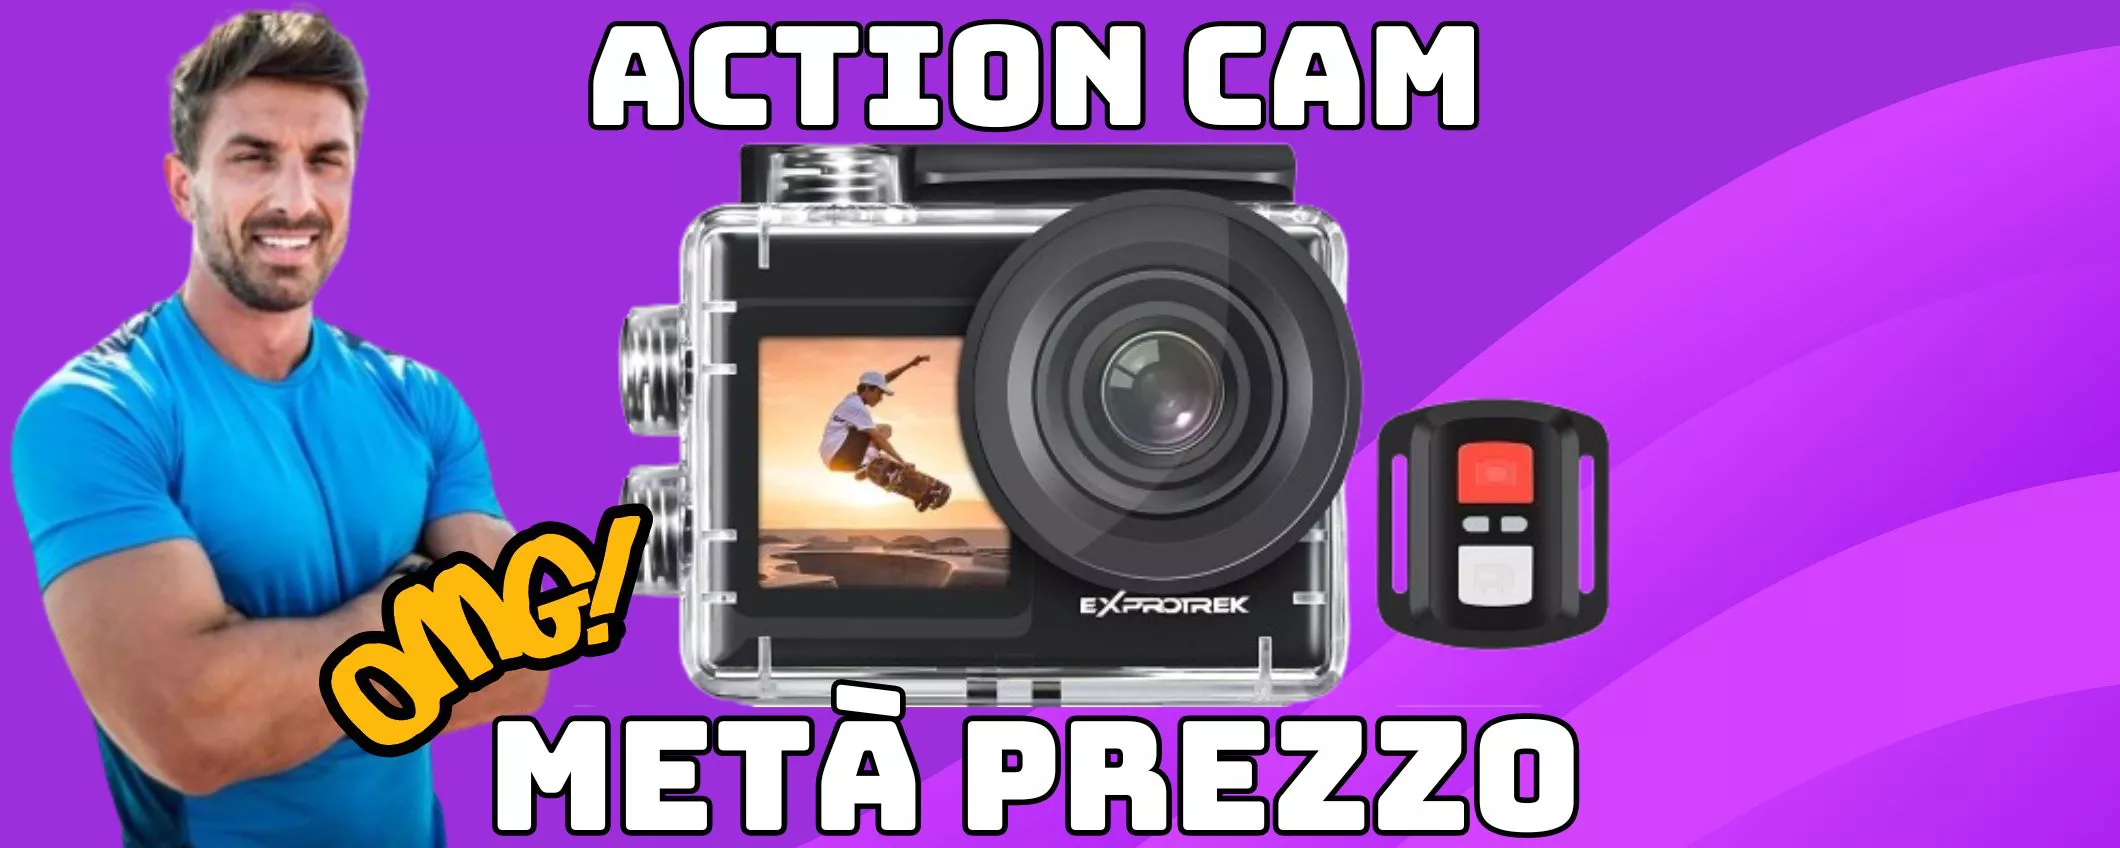 Action Cam 4K: lo sconto è quello giusto MENO 50 PER CENTO